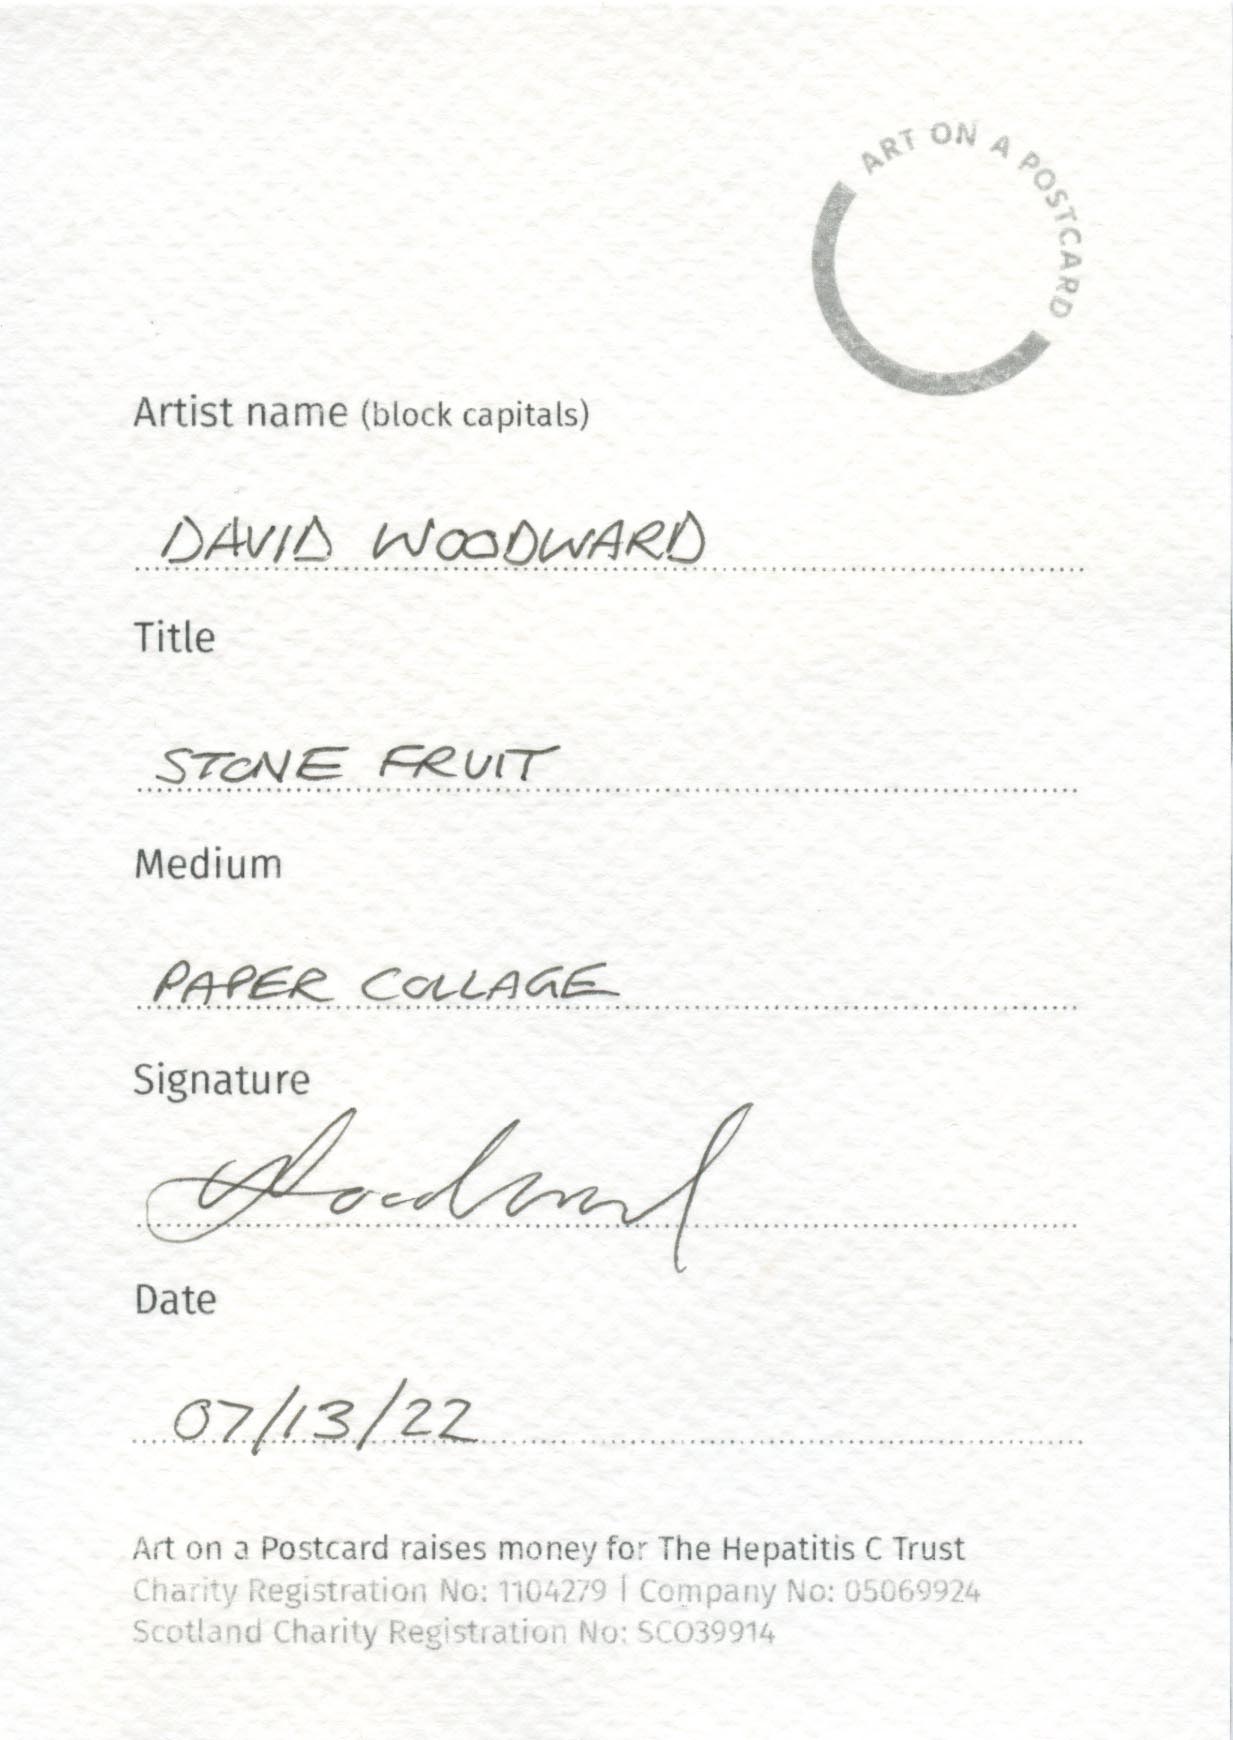 25. David Woodward - Stone Fruit - BACK